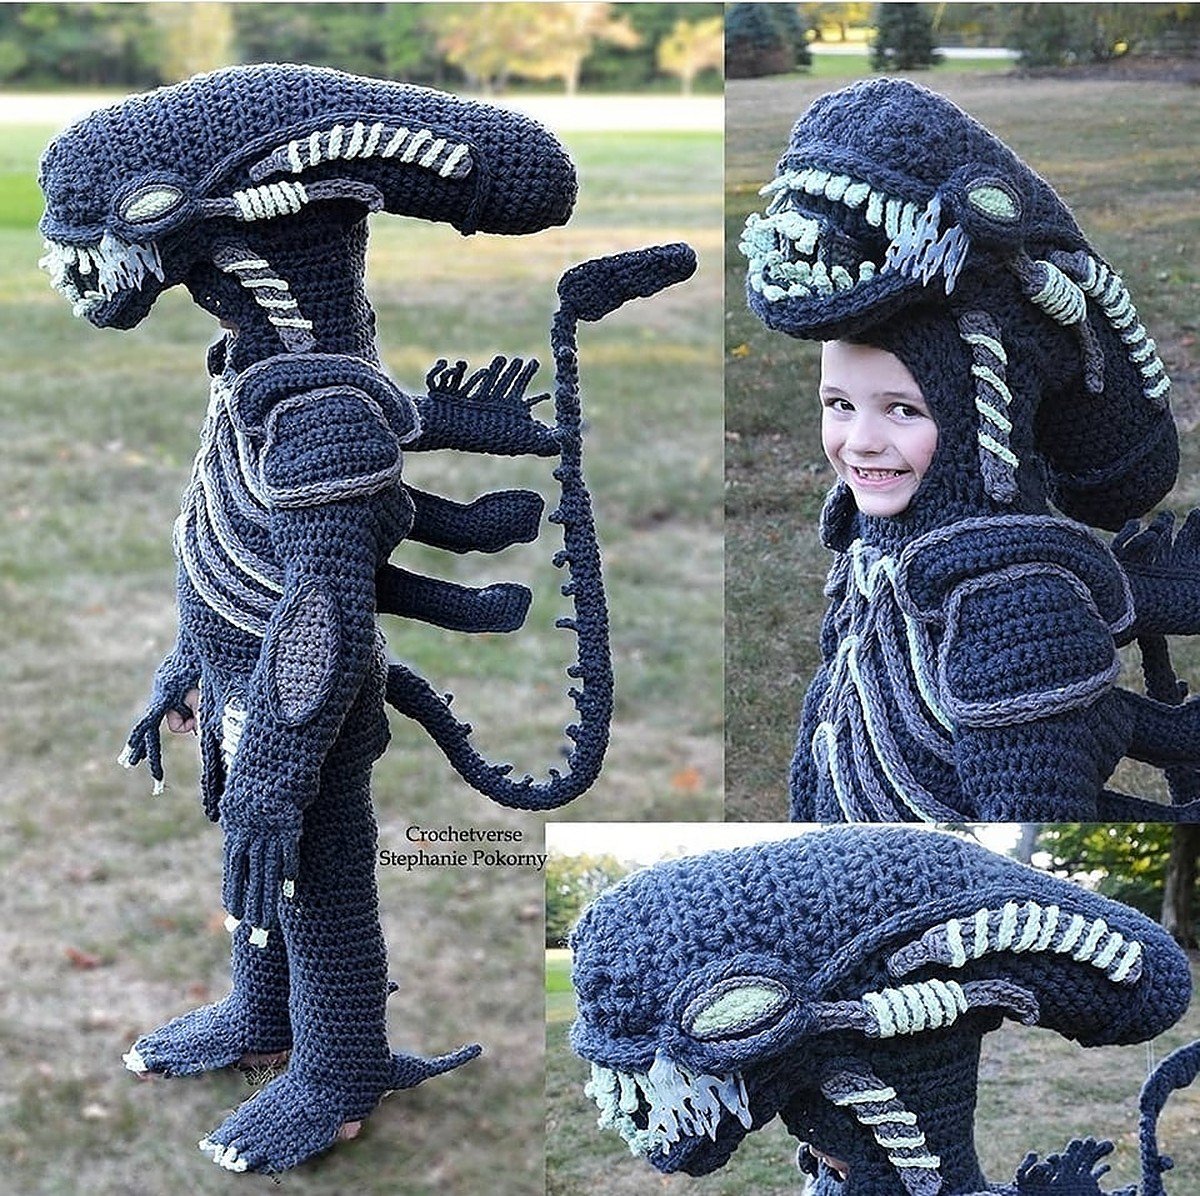 The alien from 'Alien' is a fan 